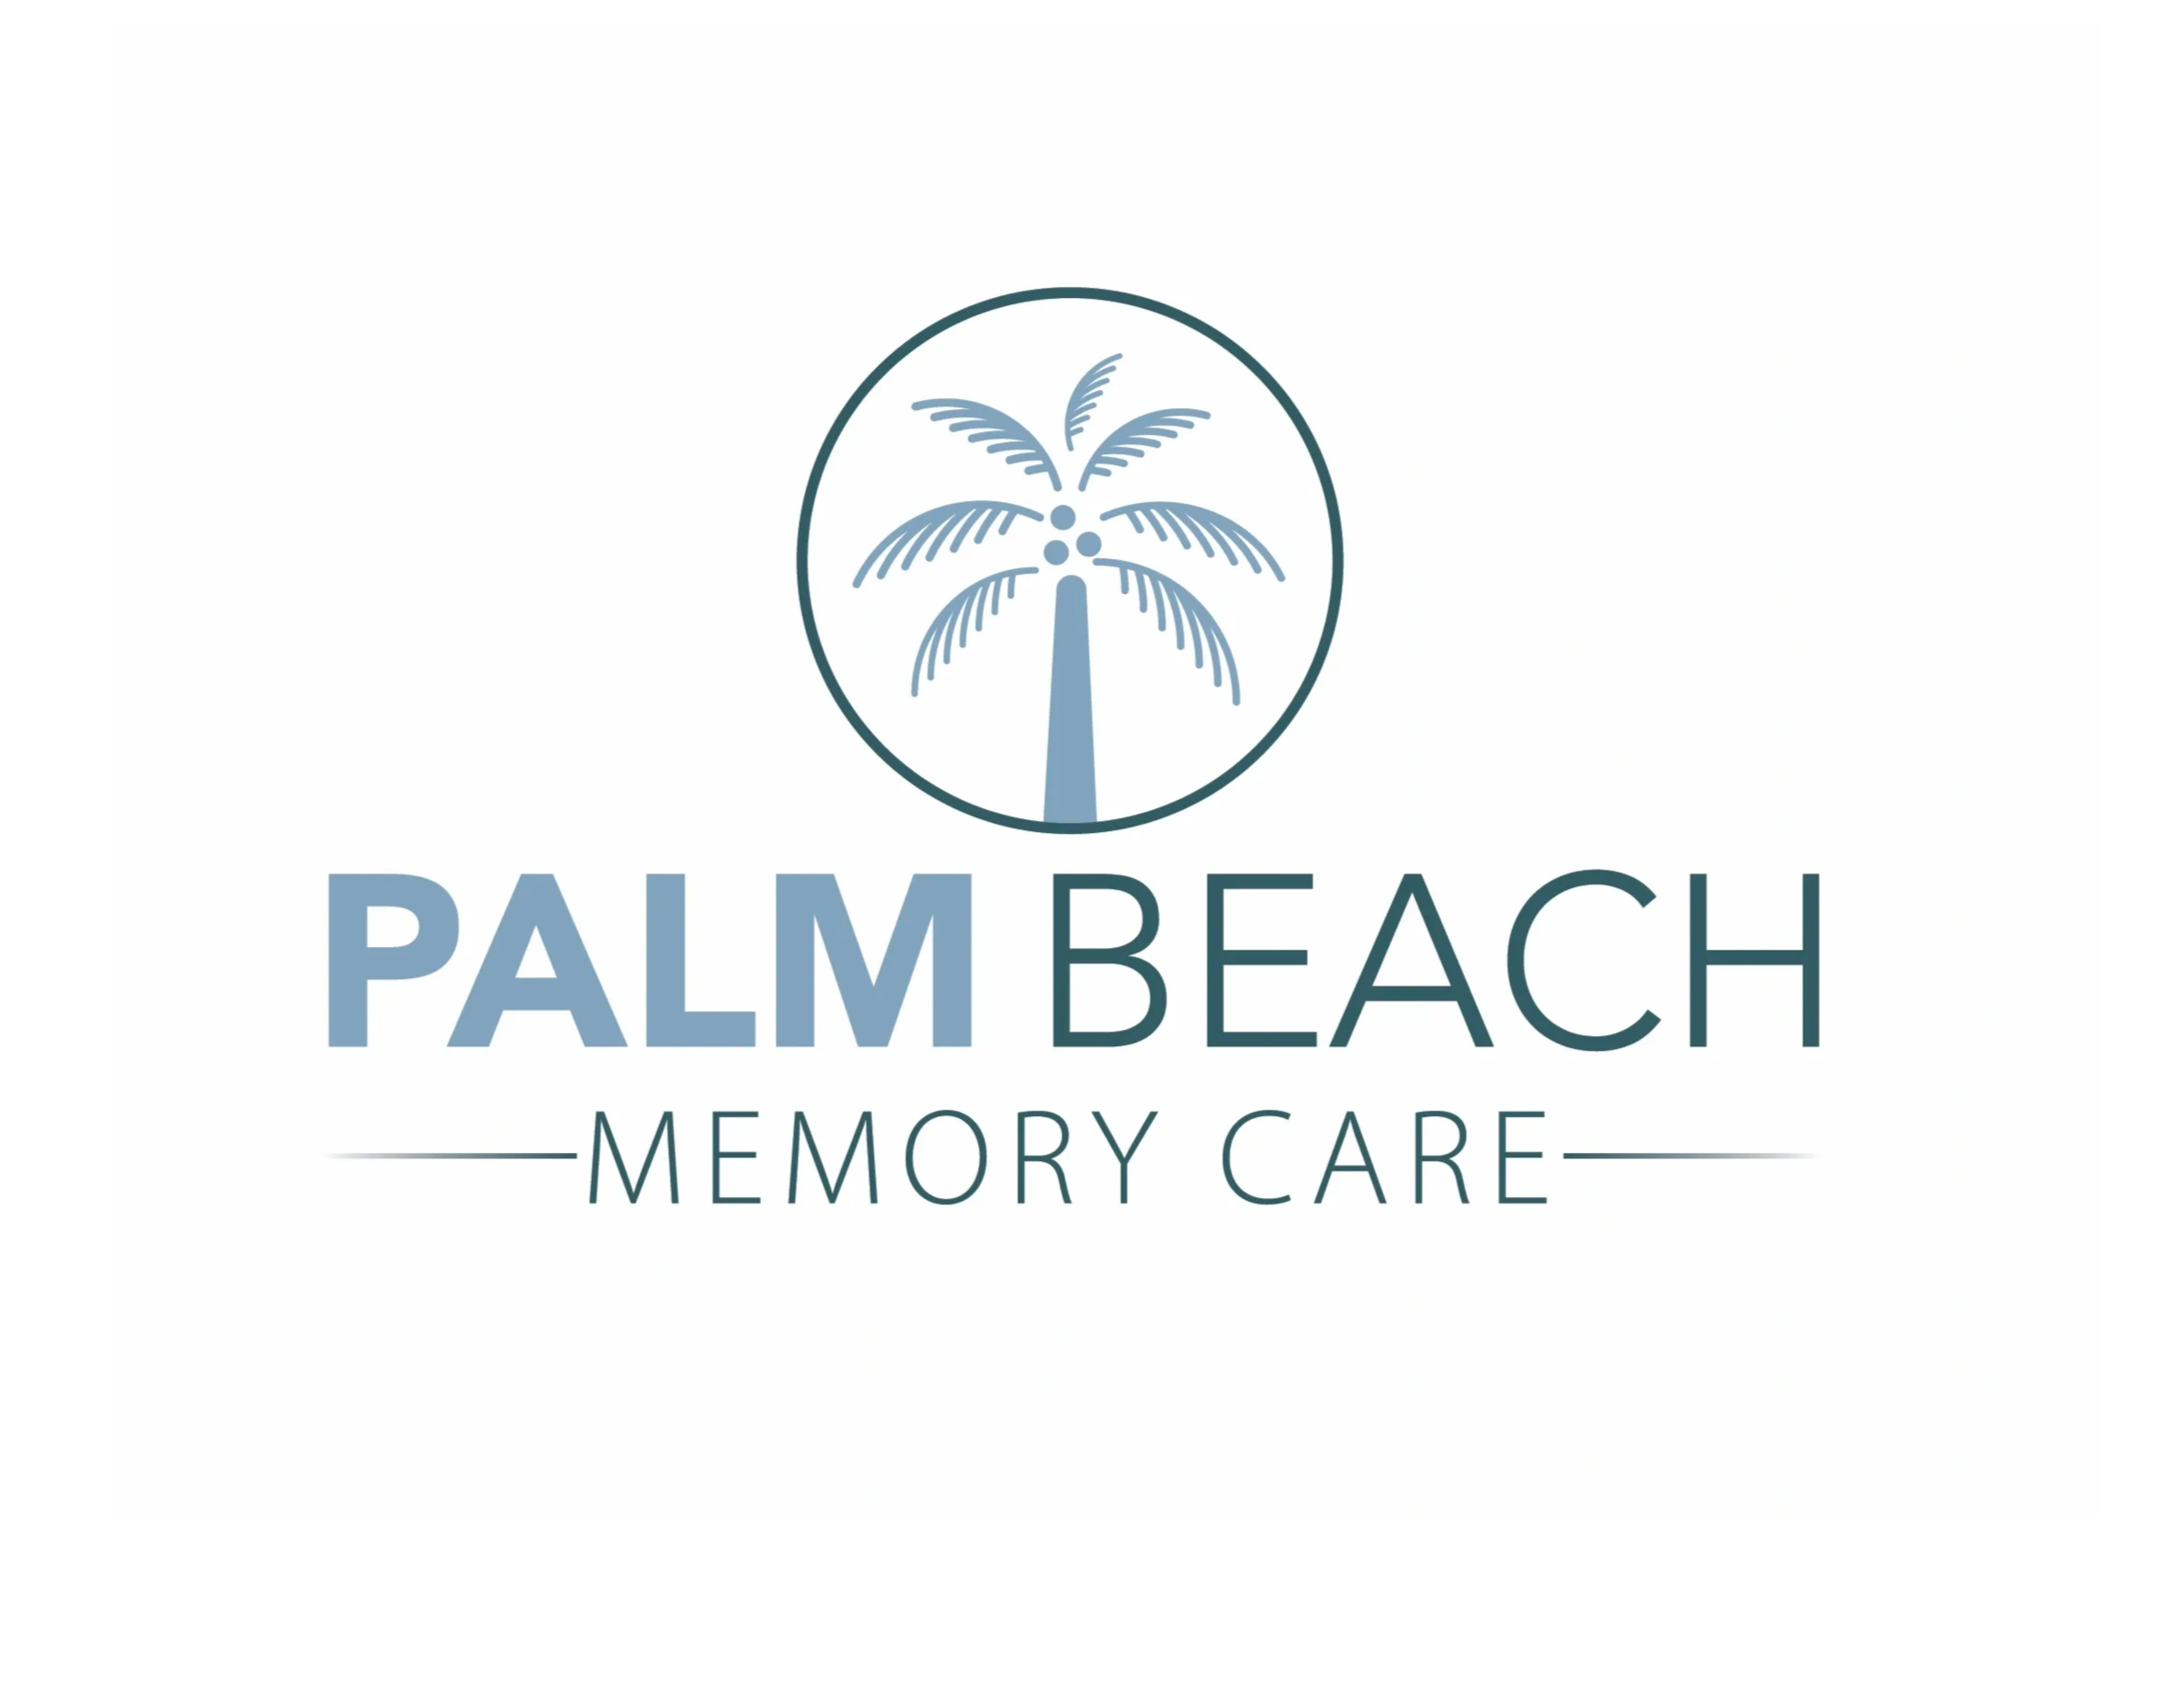 Palm beach memory care